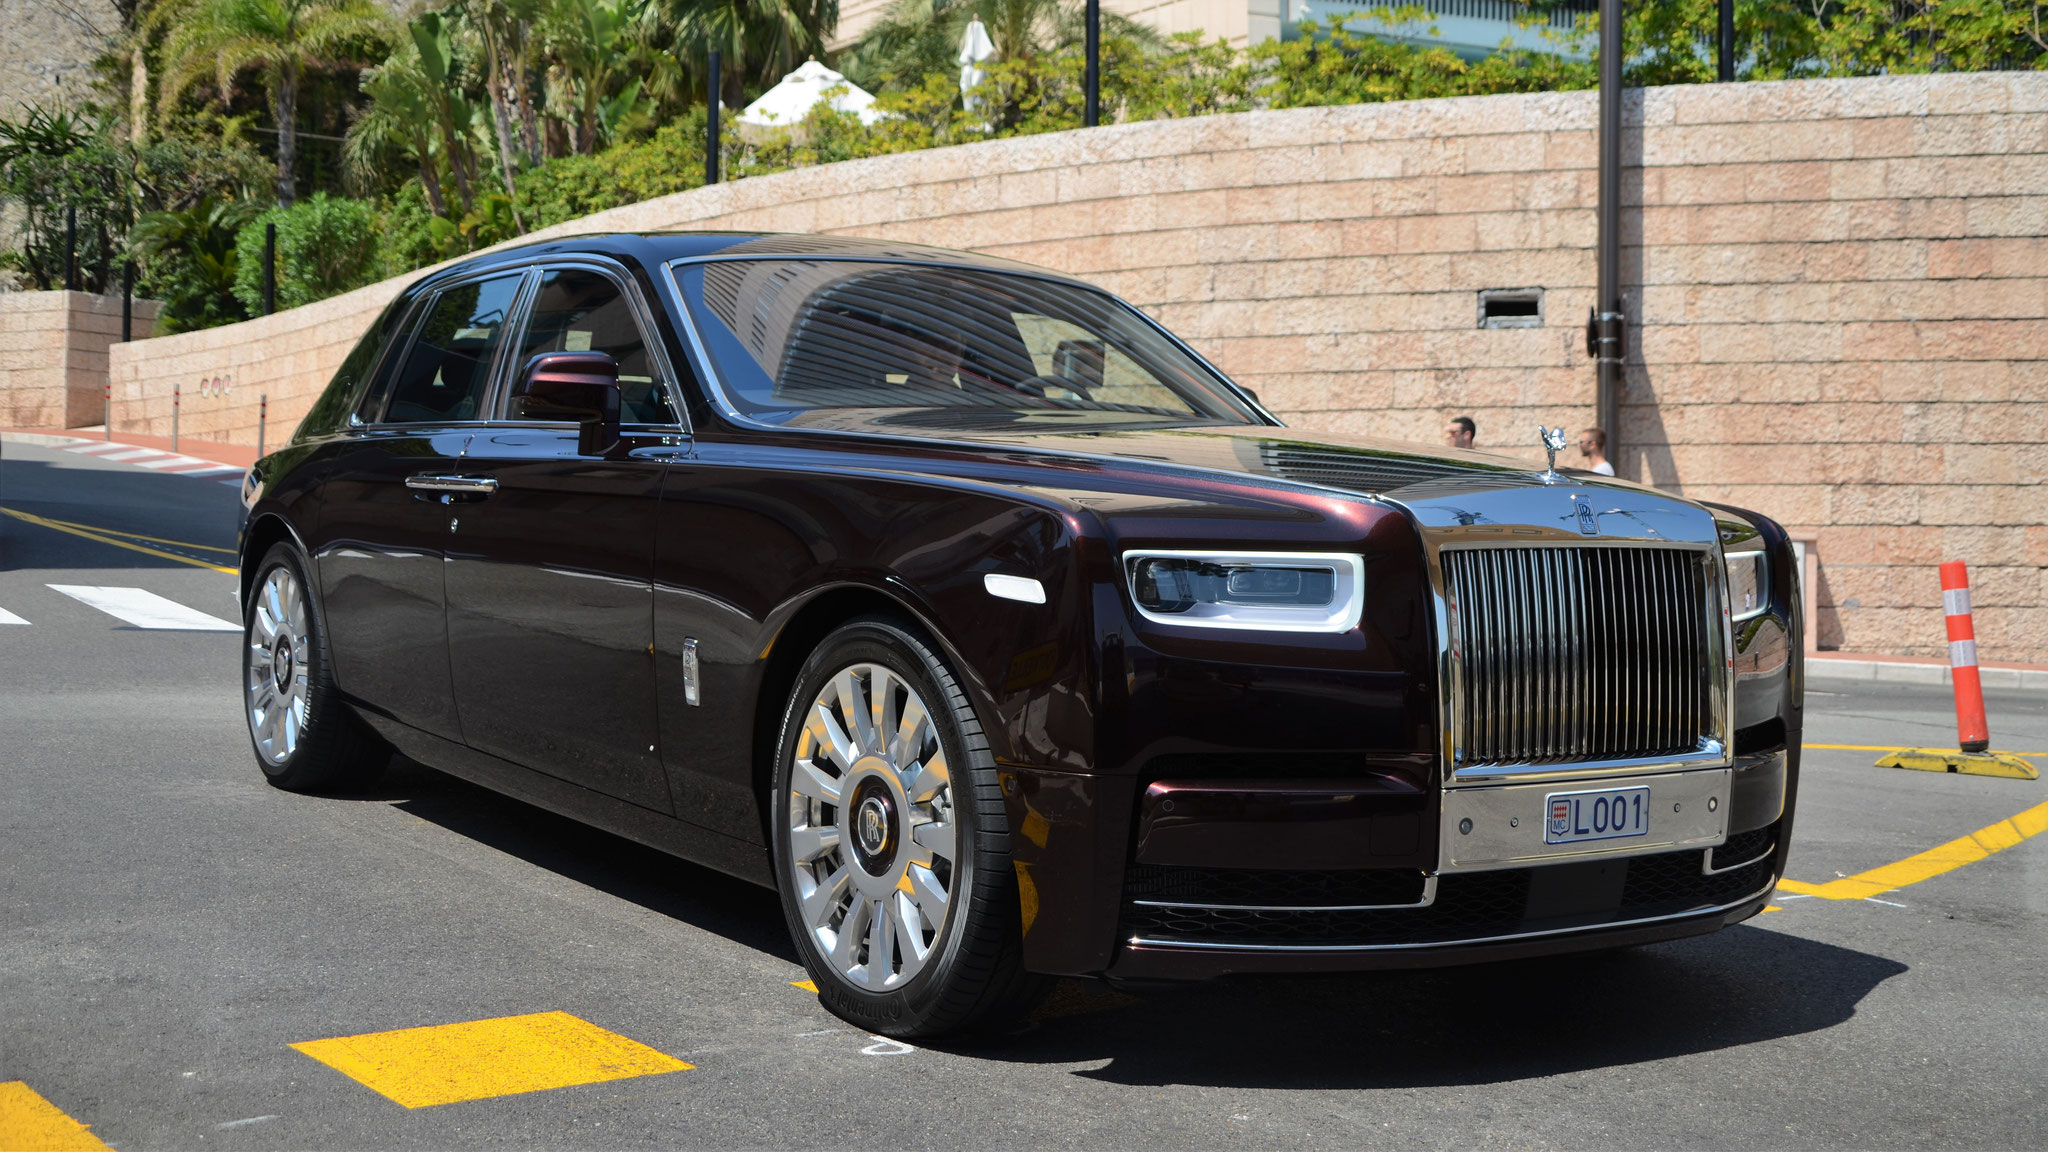 Rolls Royce Phantom - L001 (MC)